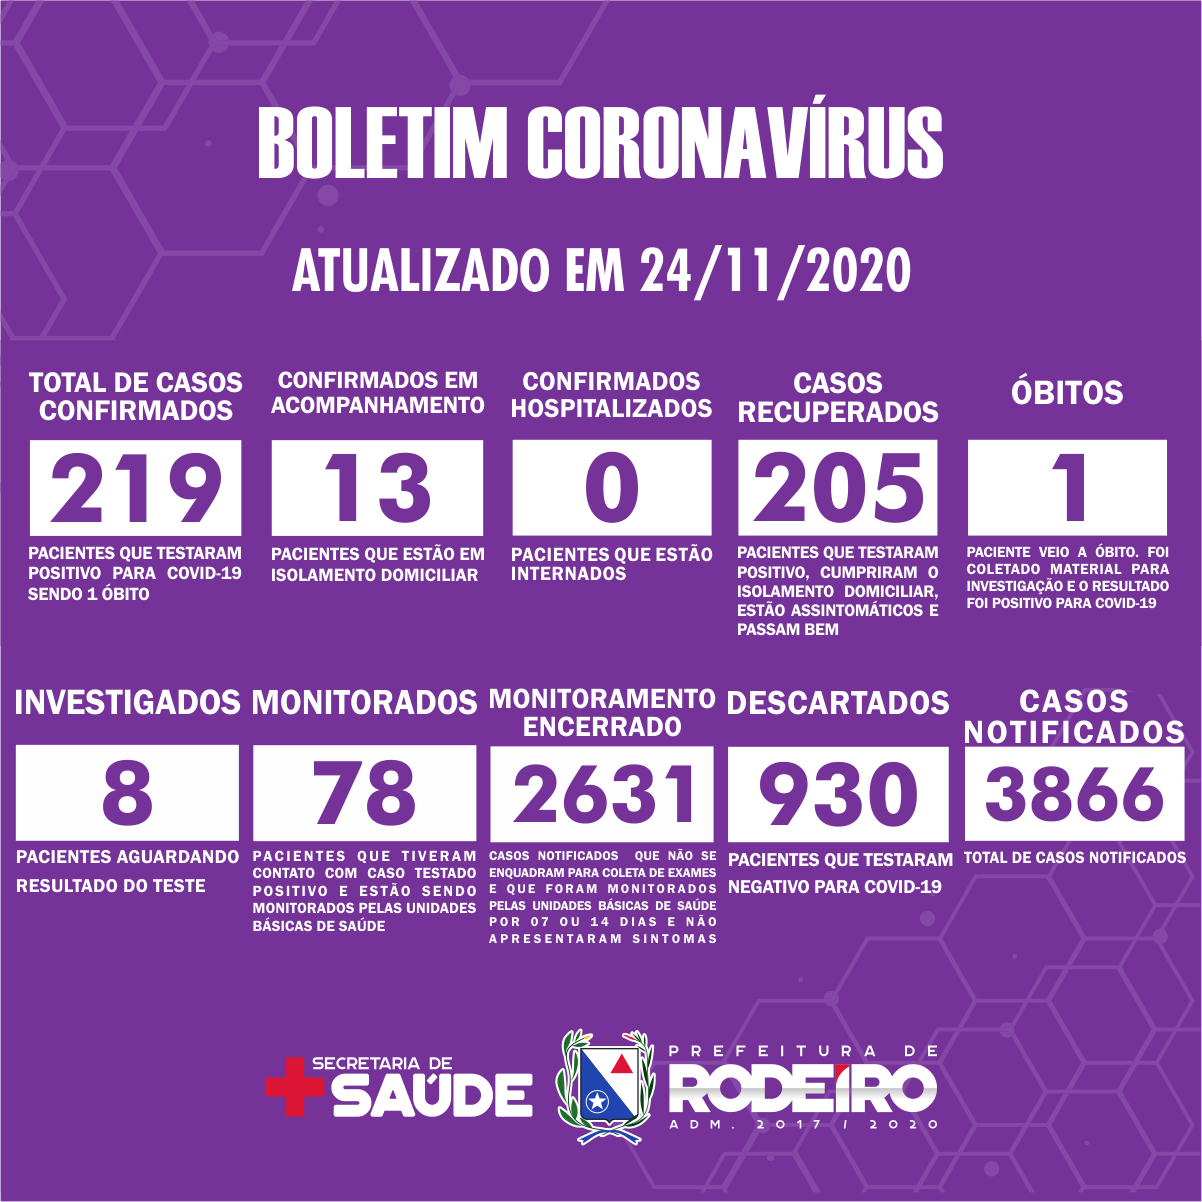 Boletim Epidemiológico do Município de Rodeiro sobre coronavírus, atualizado em 24/11/2020